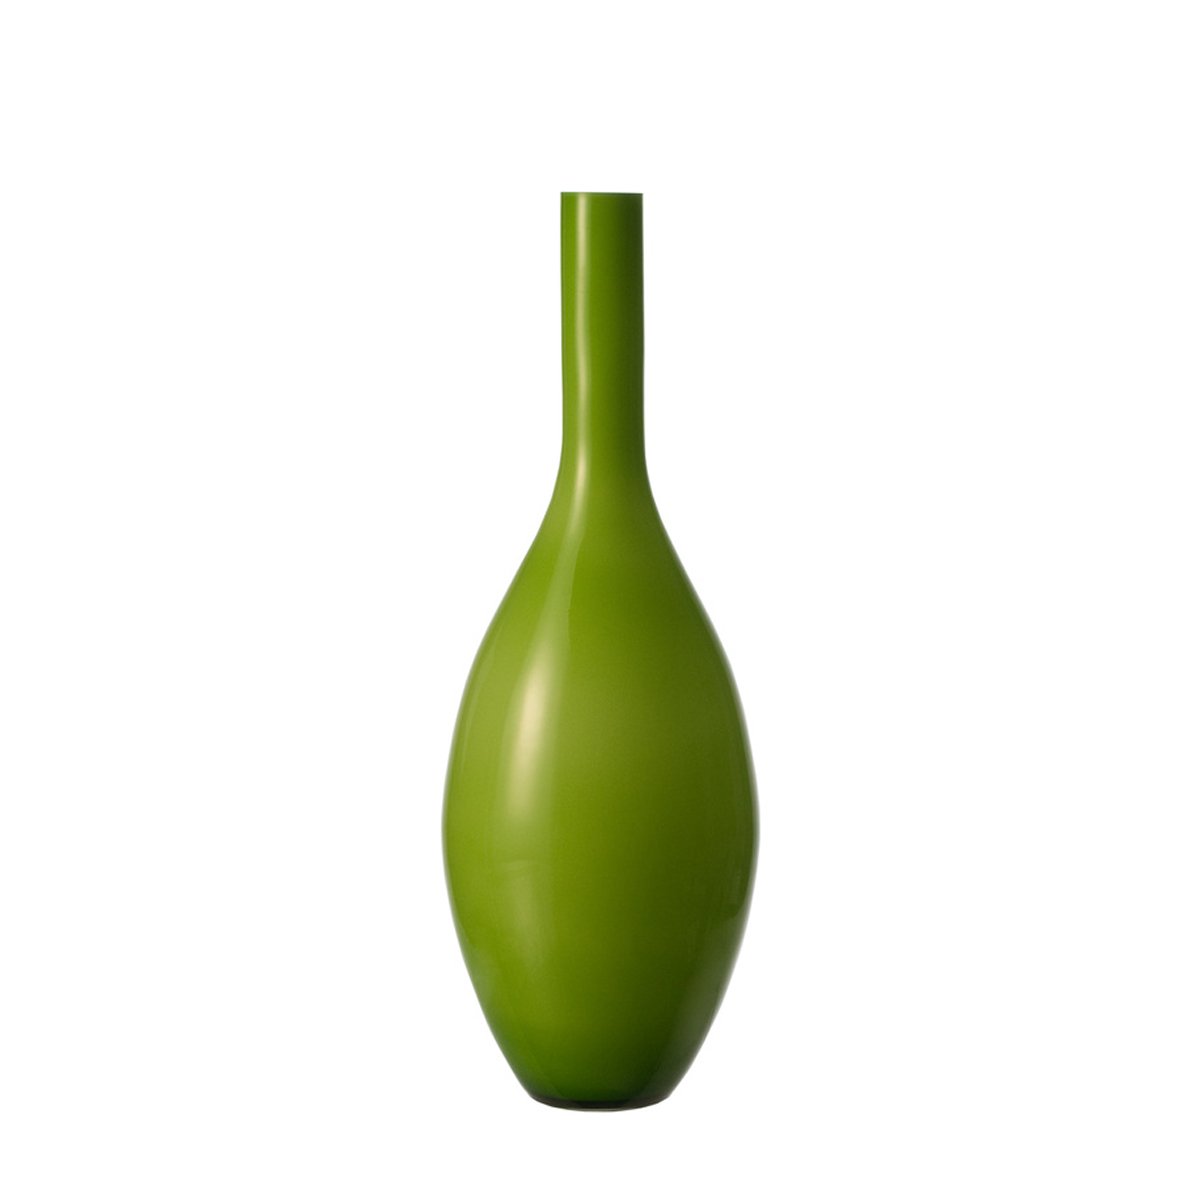 Leonardo Beauty 40492 Vase 65 Cm Green